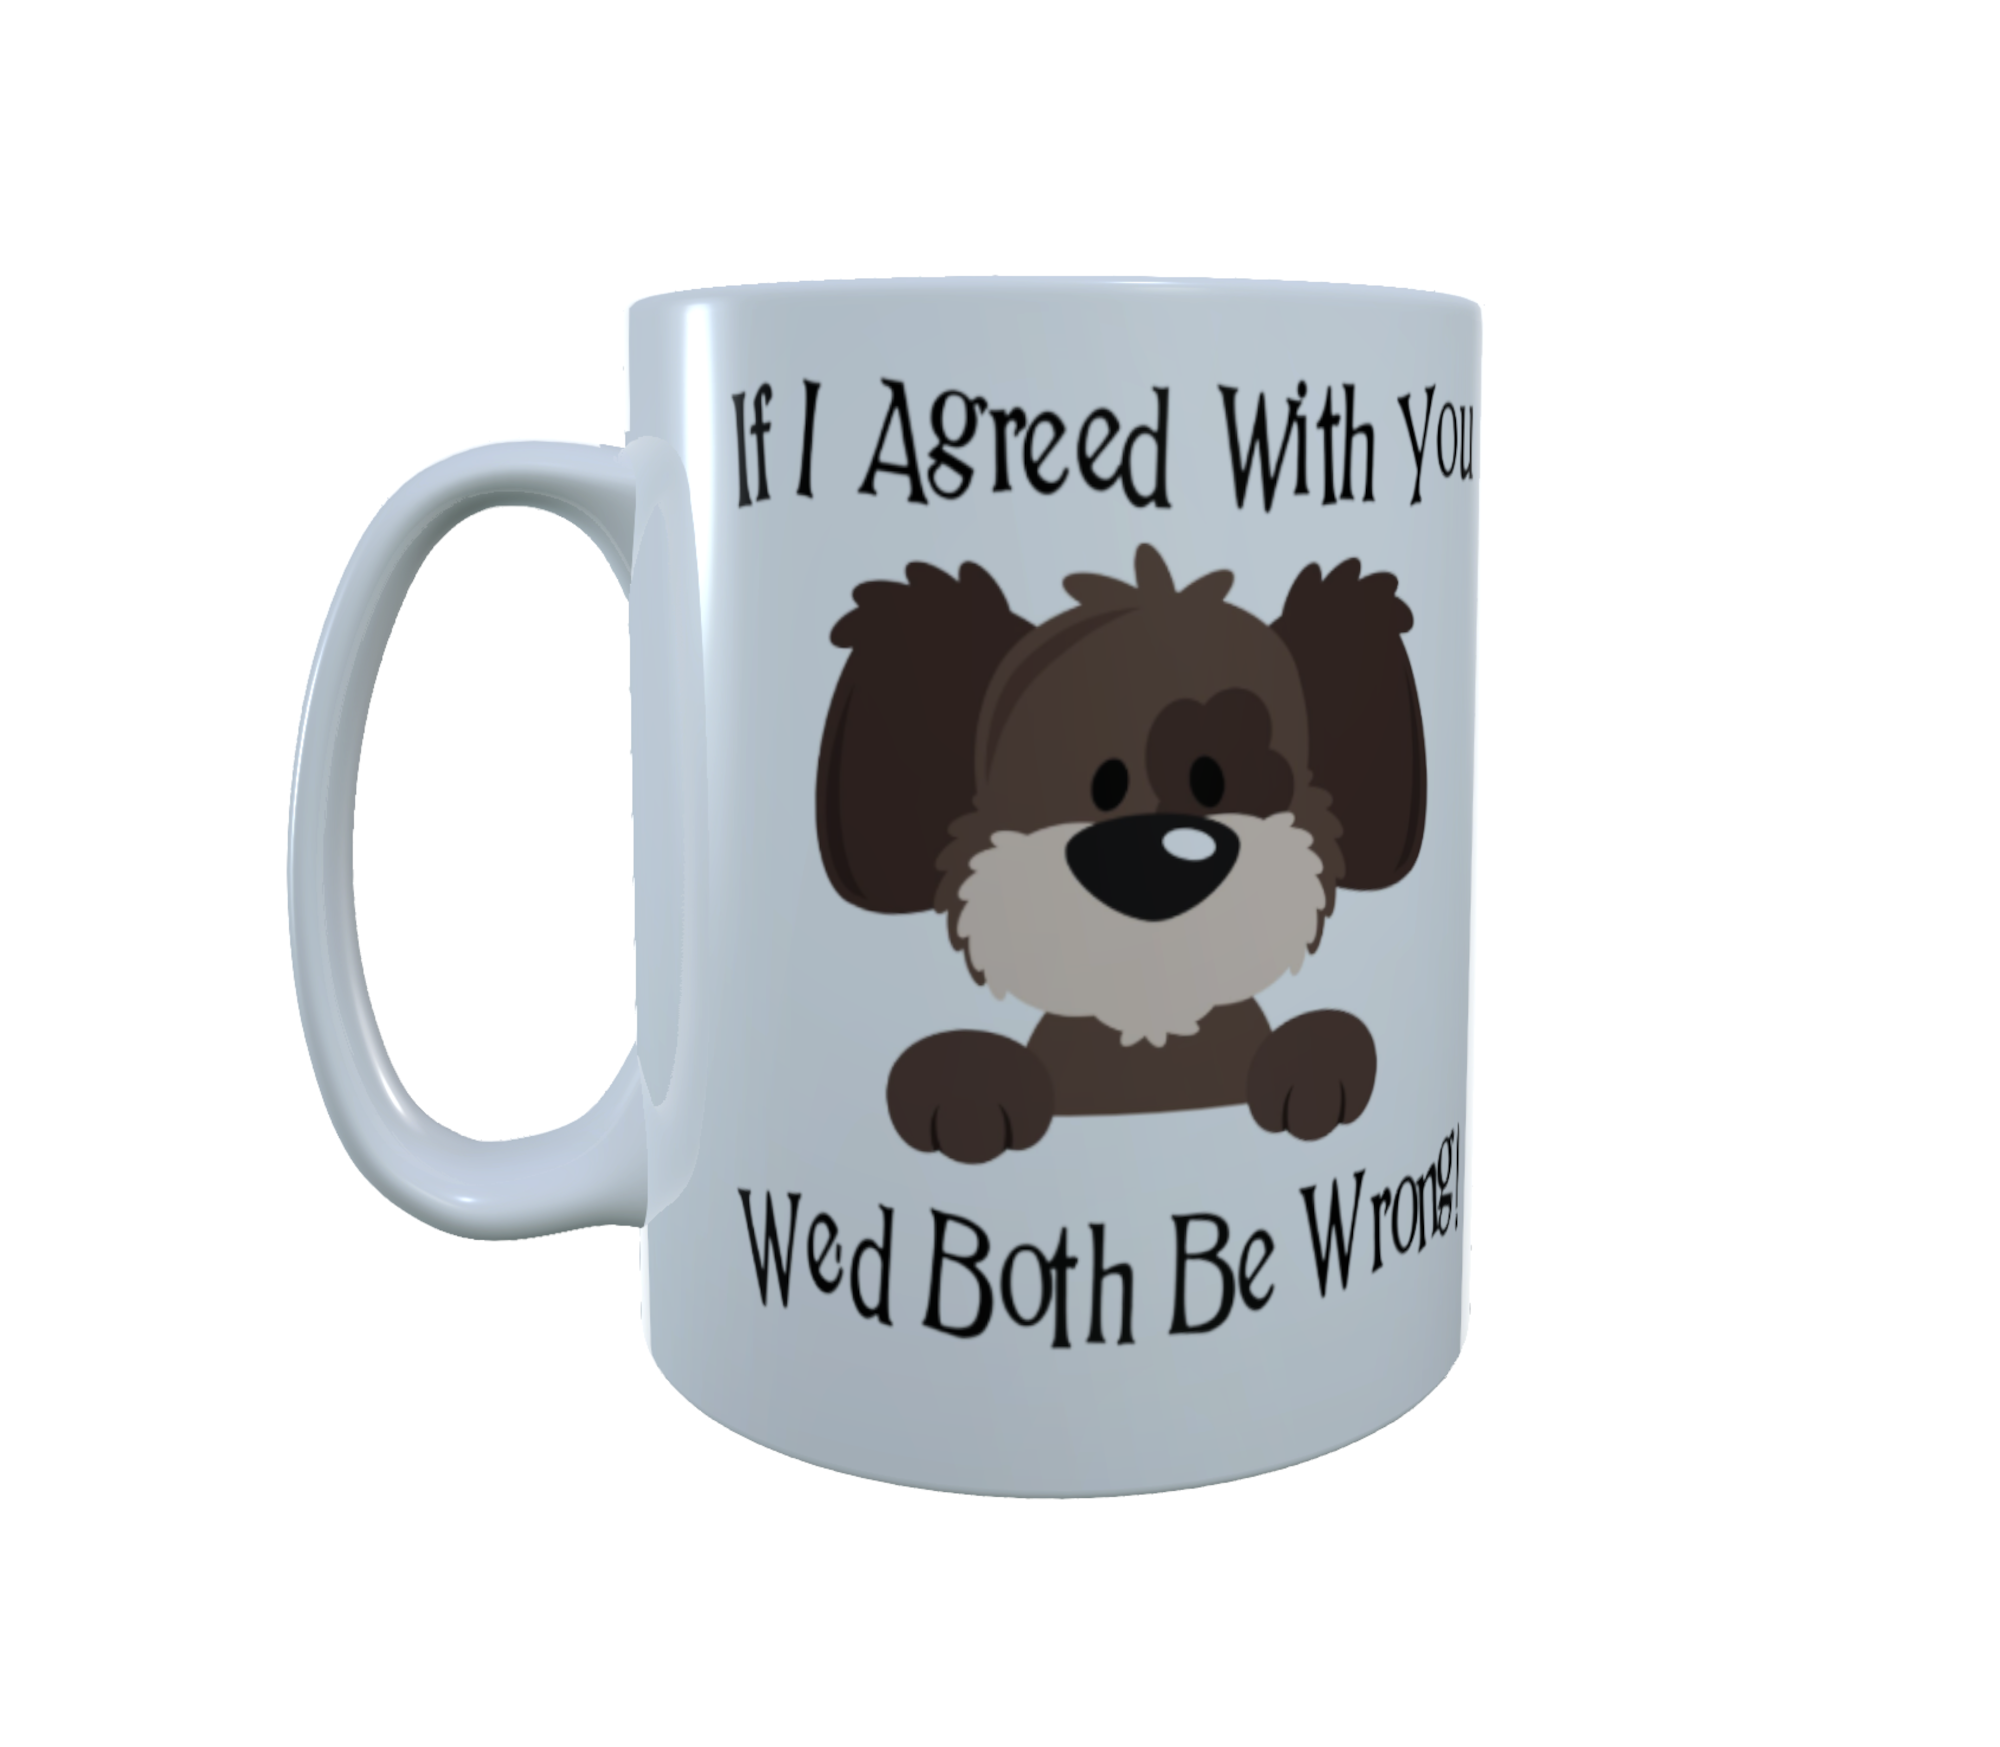 Dog Ceramic Mug - If I Agreed With You We'd Both Be Wrong